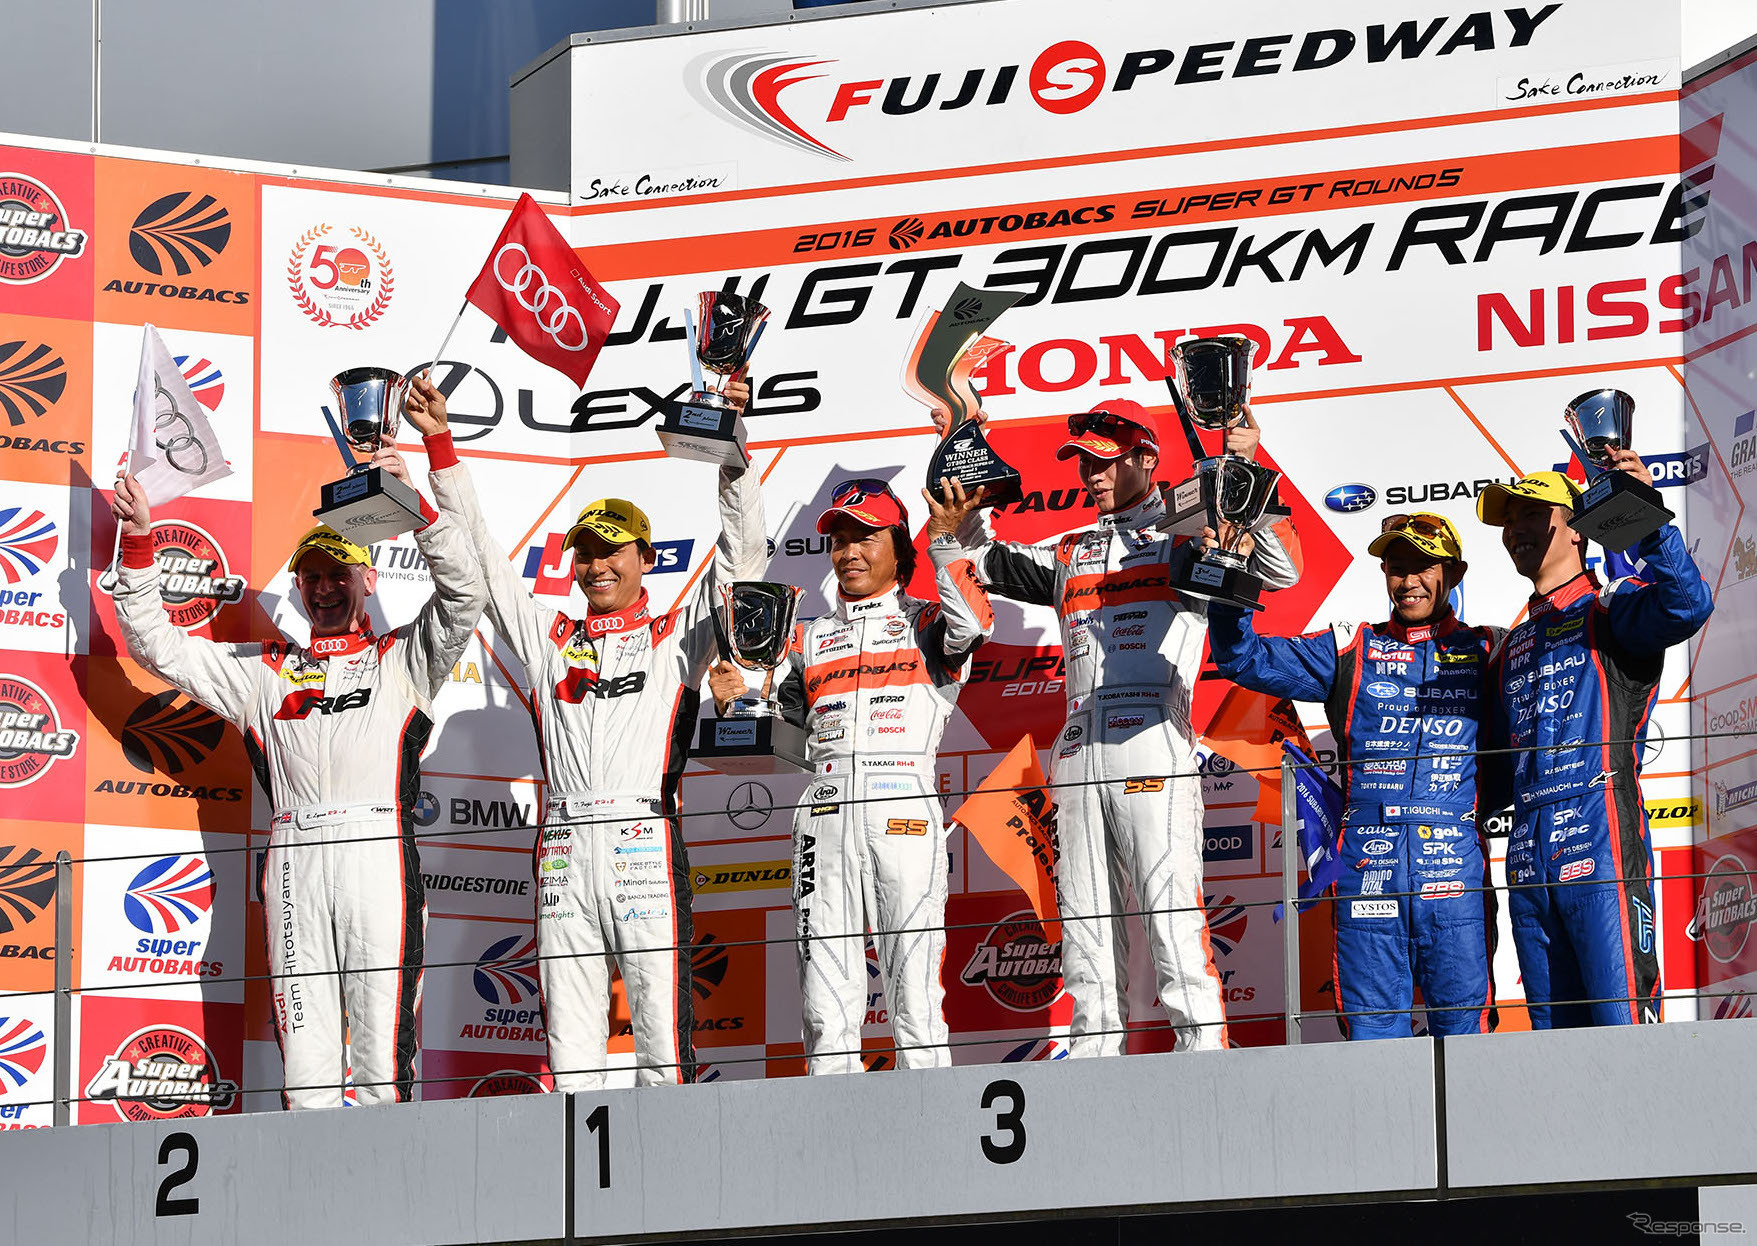 今季SUPER GT第5戦富士のGT300クラス表彰式。#21 アウディのライアン&藤井がこのレース2位に。